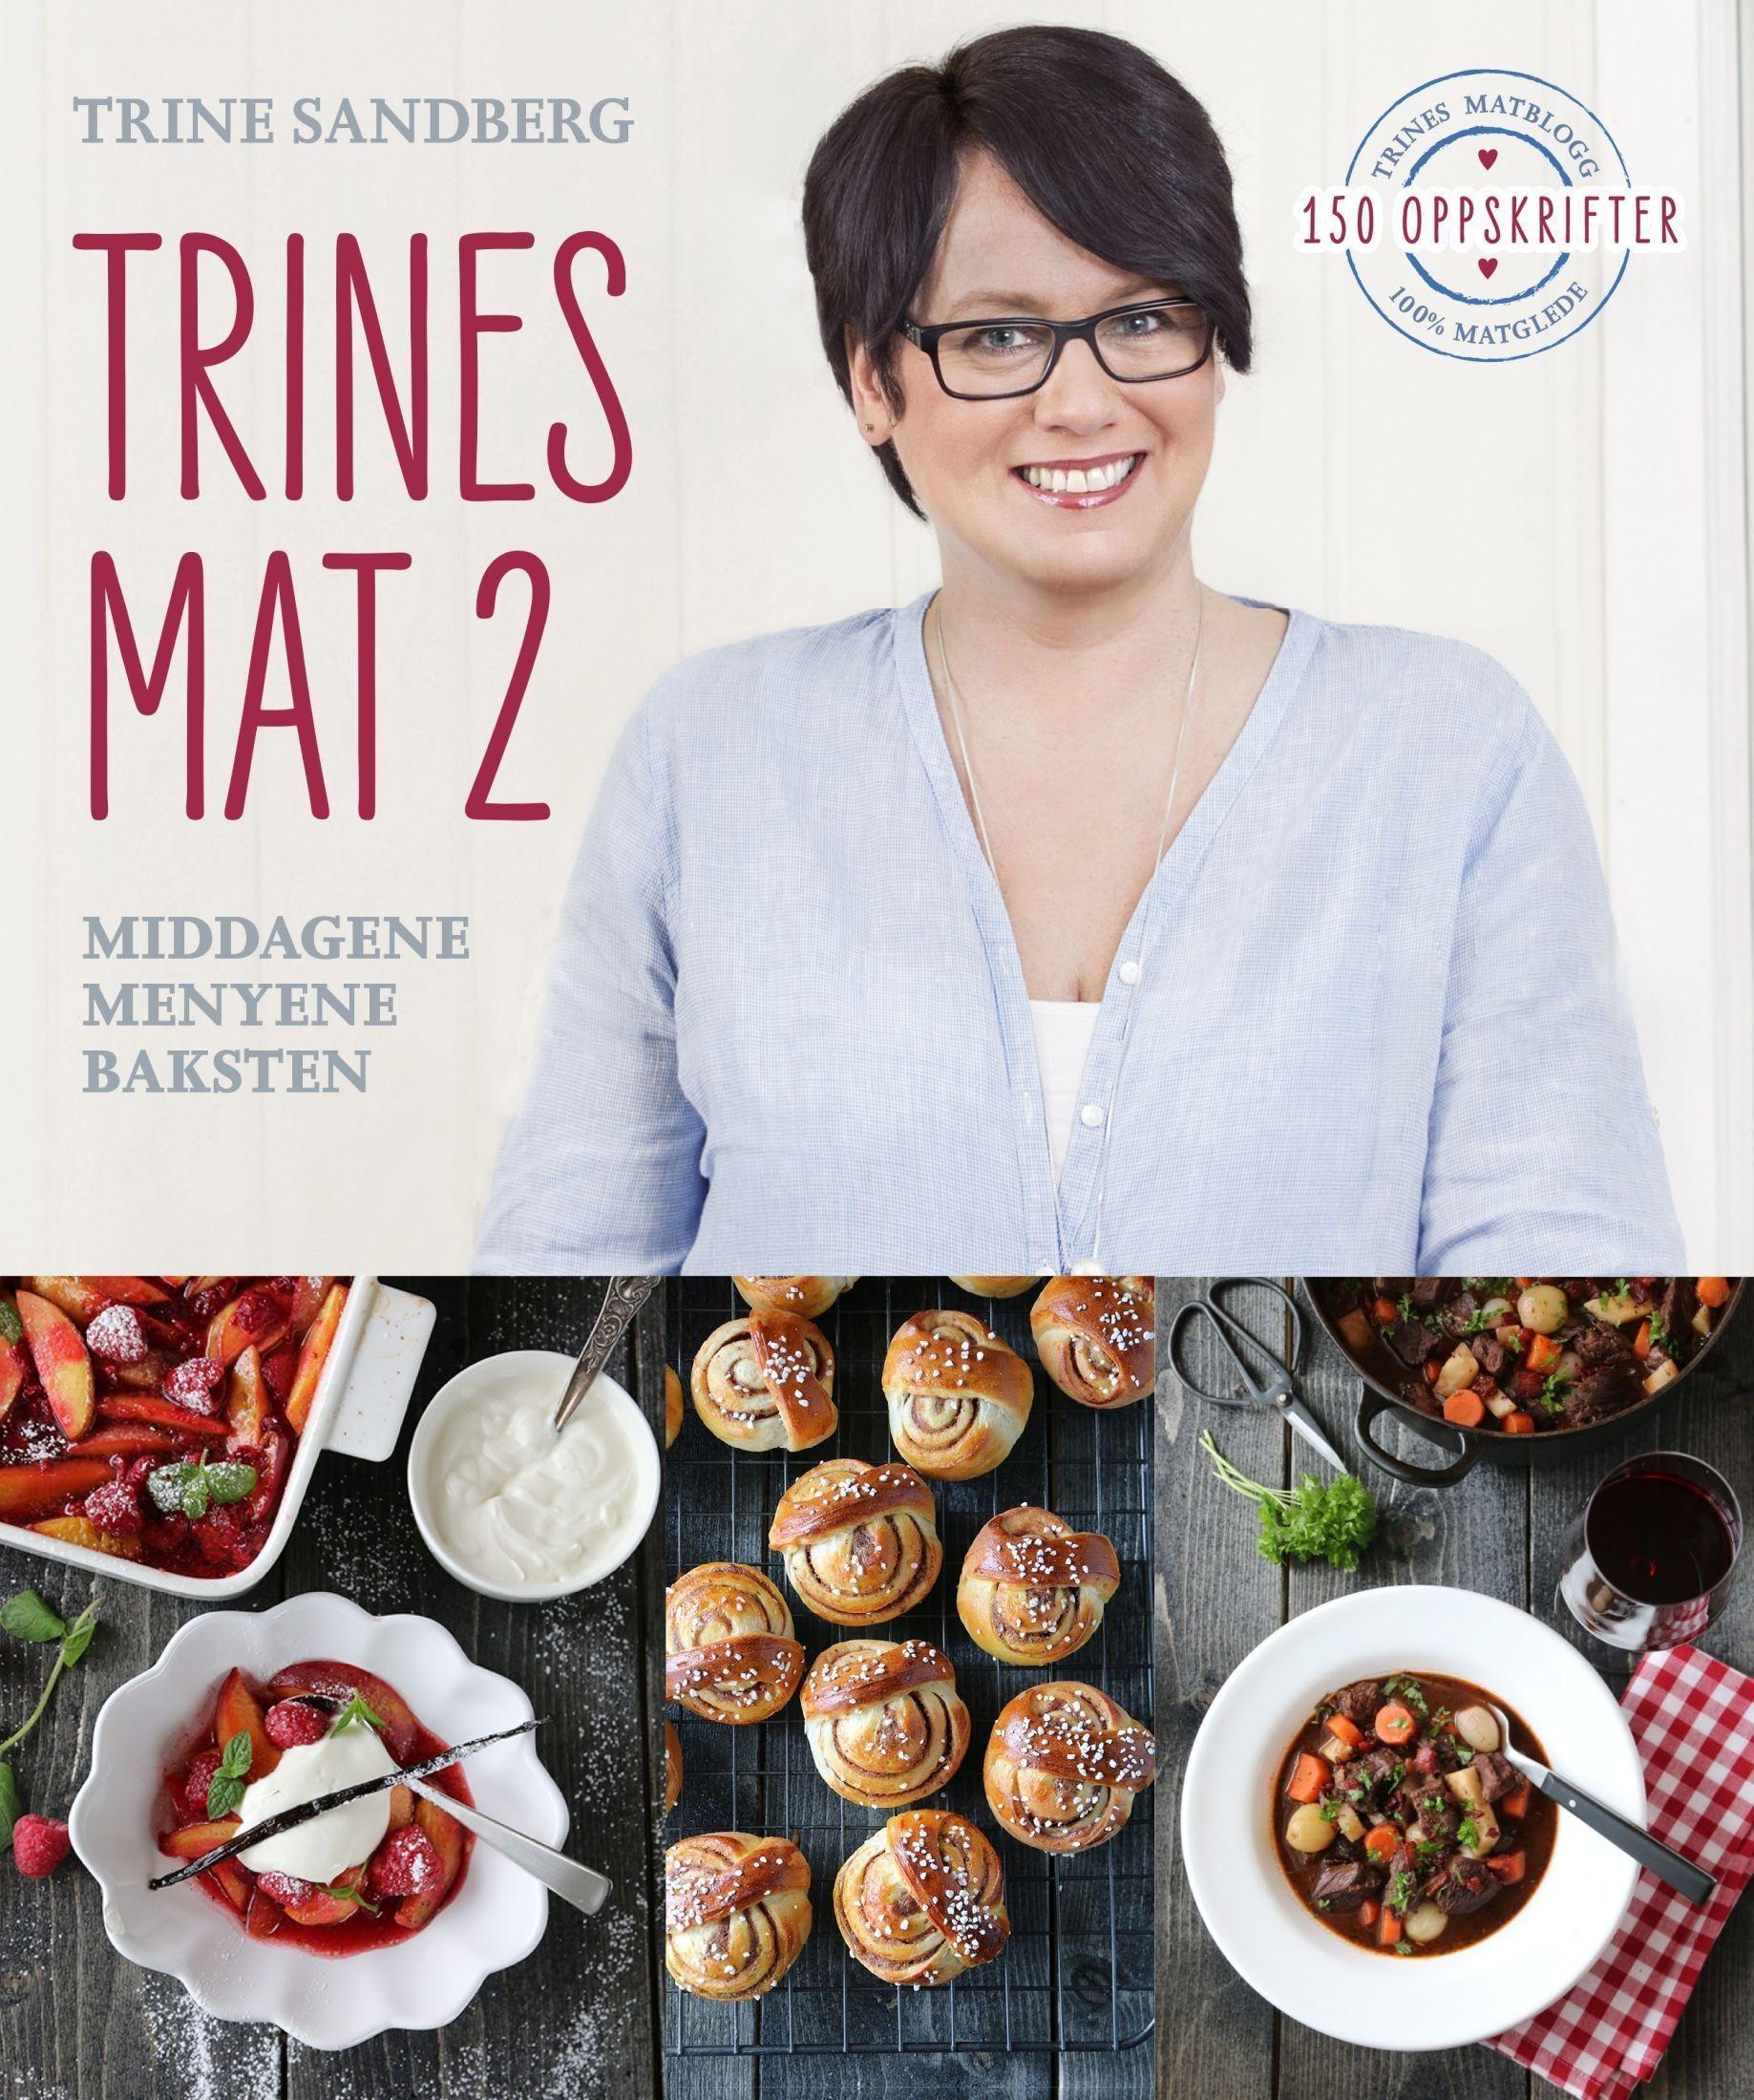 BOK NUMMER TO: Nå kommer Trine Sandbergs andre kokebok, Trines mat 2, i butikk.